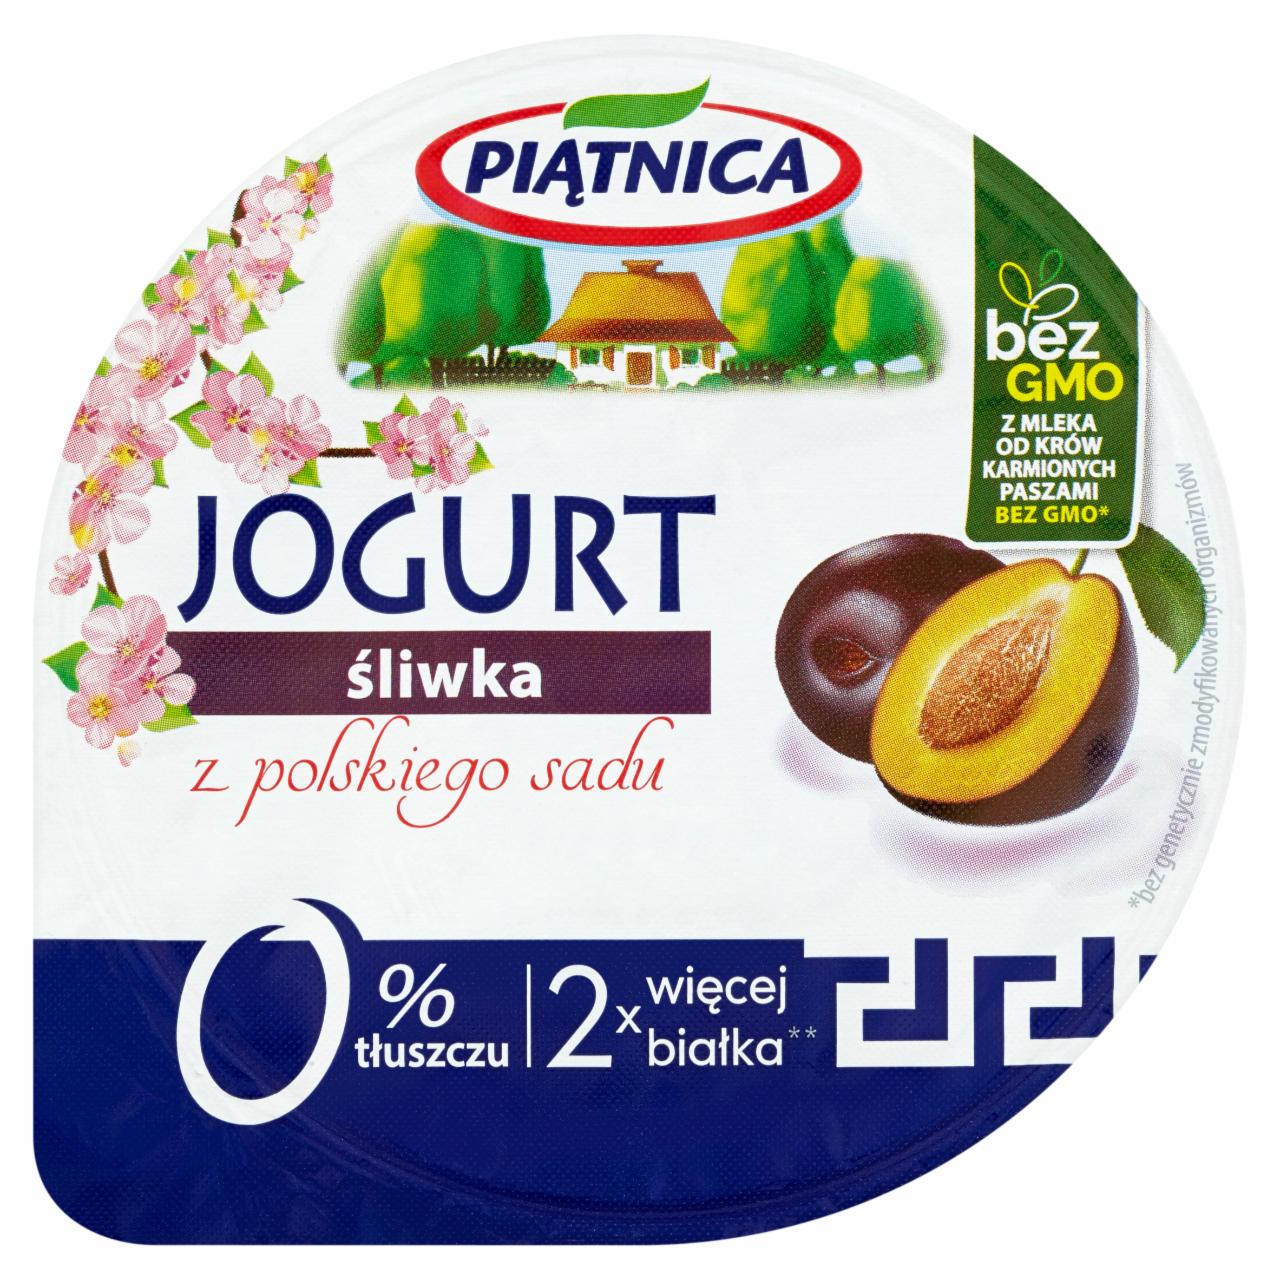 Zdjęcia - Piątnica Jogurt śliwka z polskiego sadu 150 g